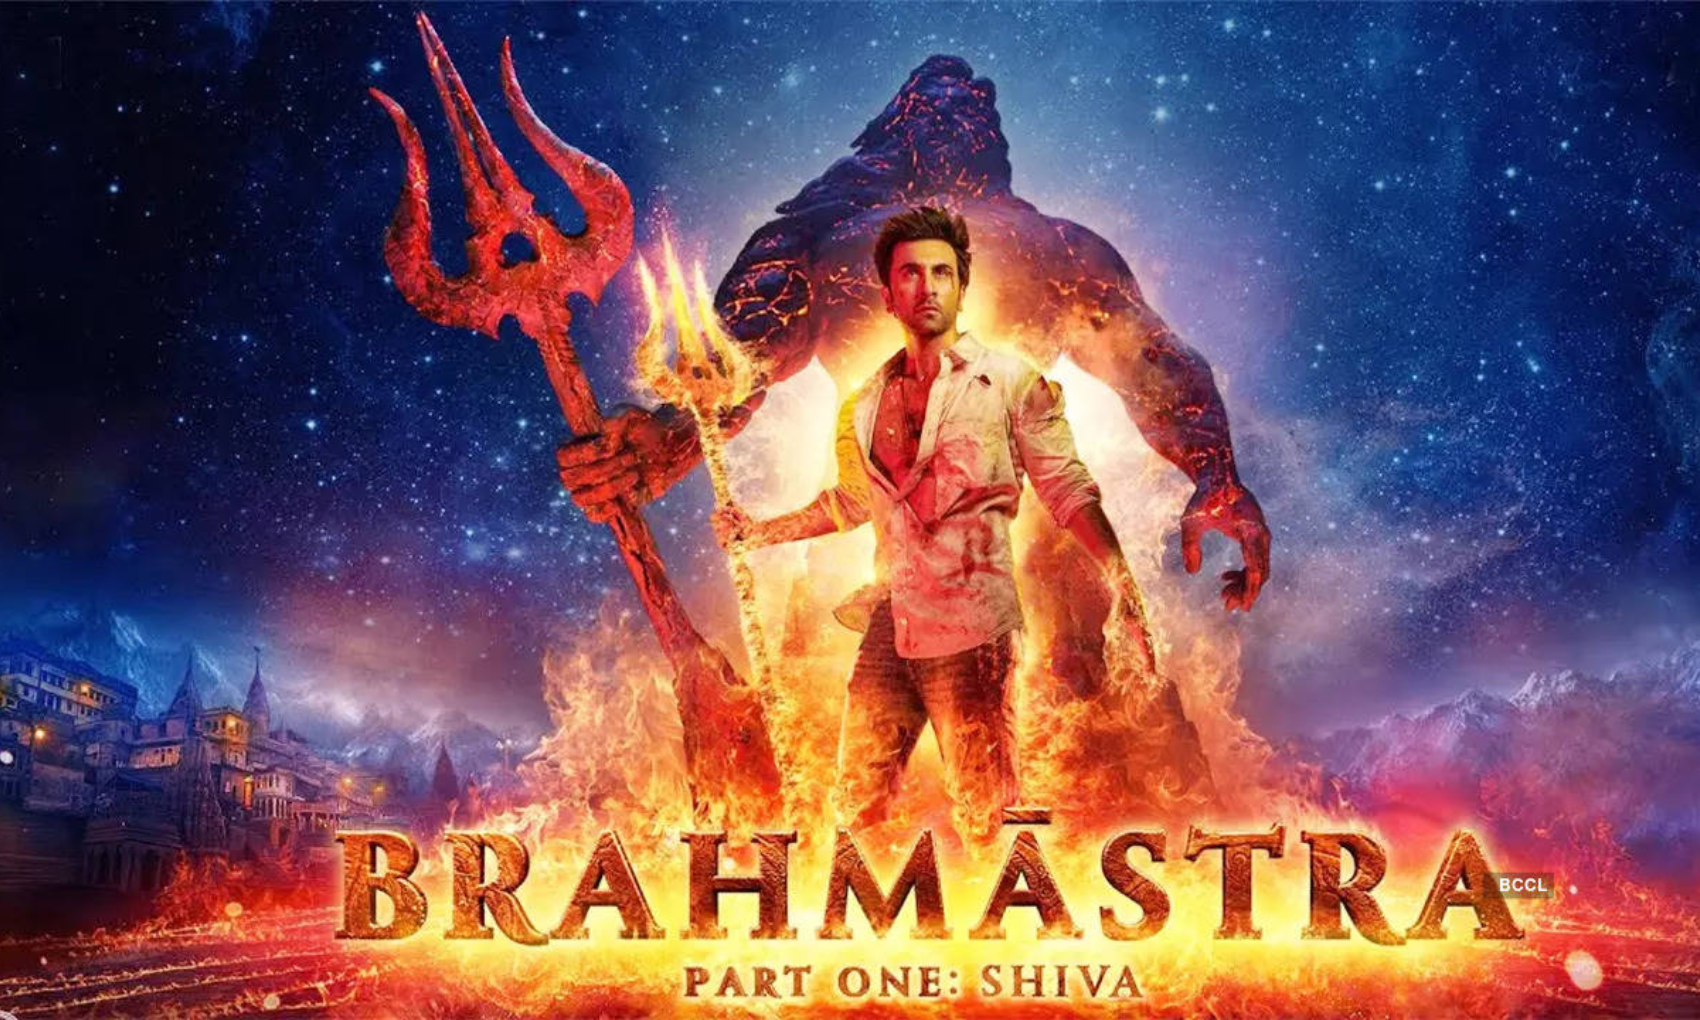 Brahmastra Review: उम्मीद पे खरी नहीं उतरी रणबीर कपूर-आलिया भट्ट की ब्रह्मास्त्र, बना दिया लव स्टोरी !